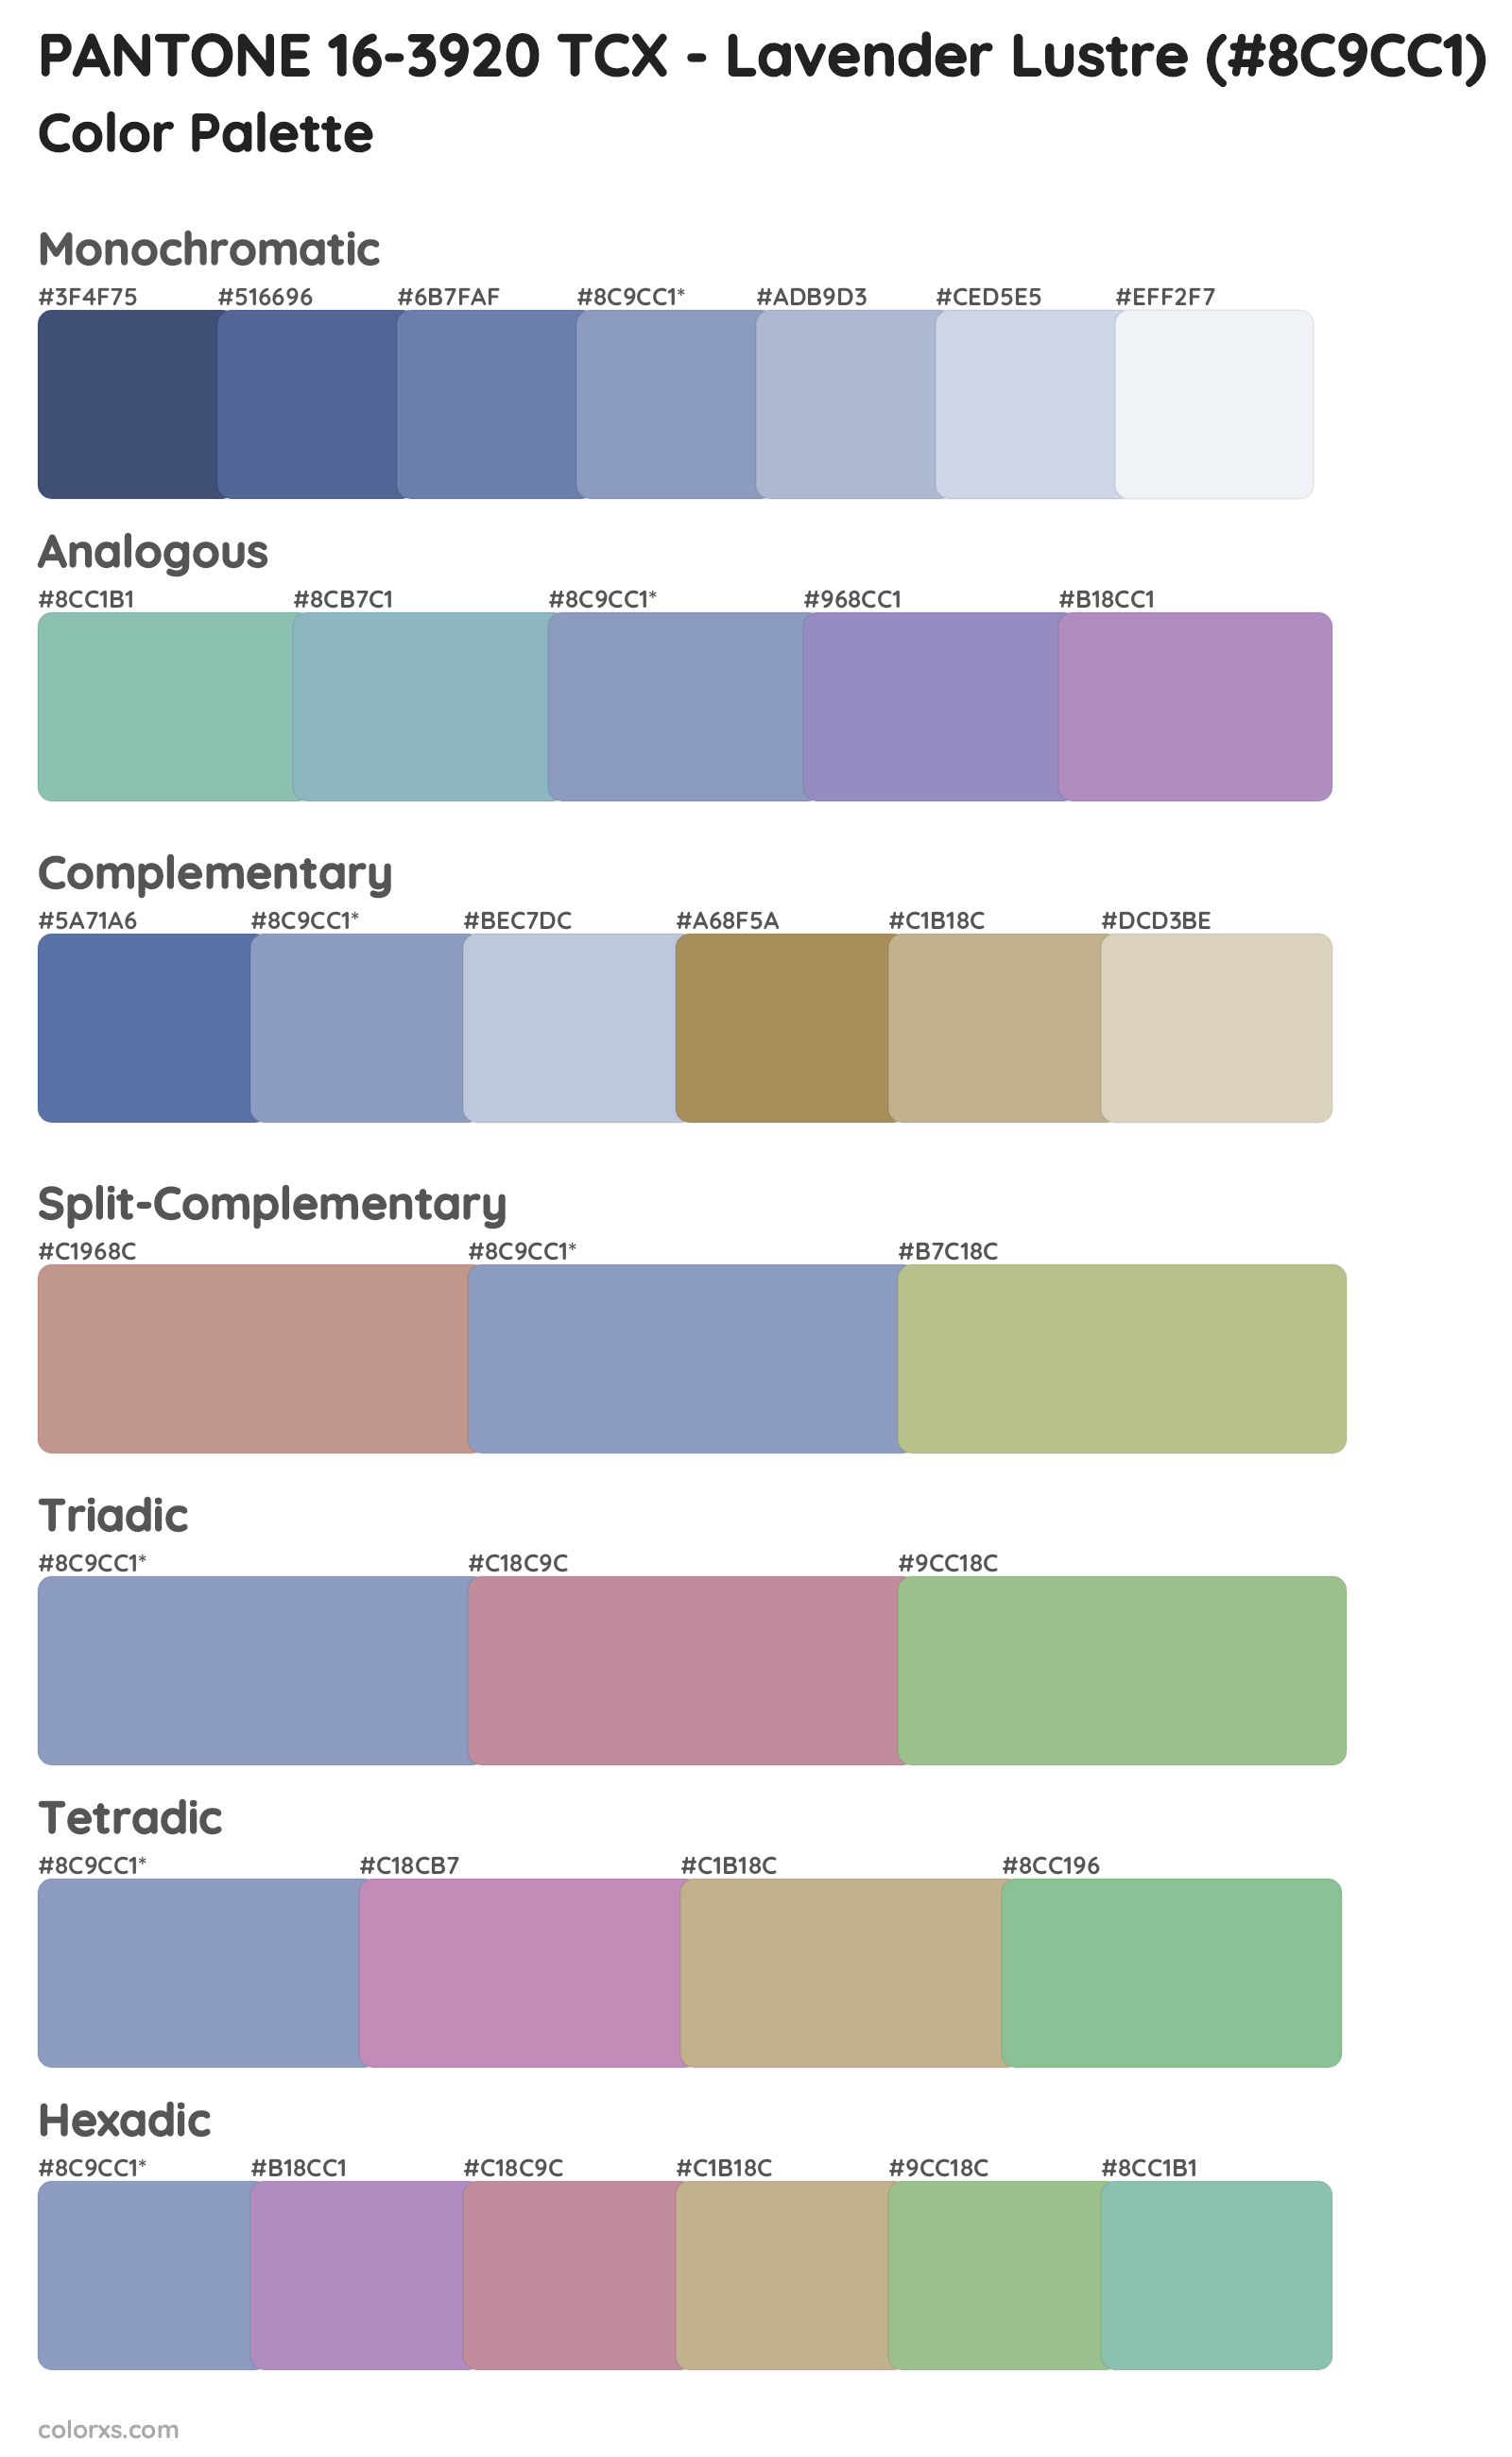 PANTONE 16-3920 TCX - Lavender Lustre Color Scheme Palettes